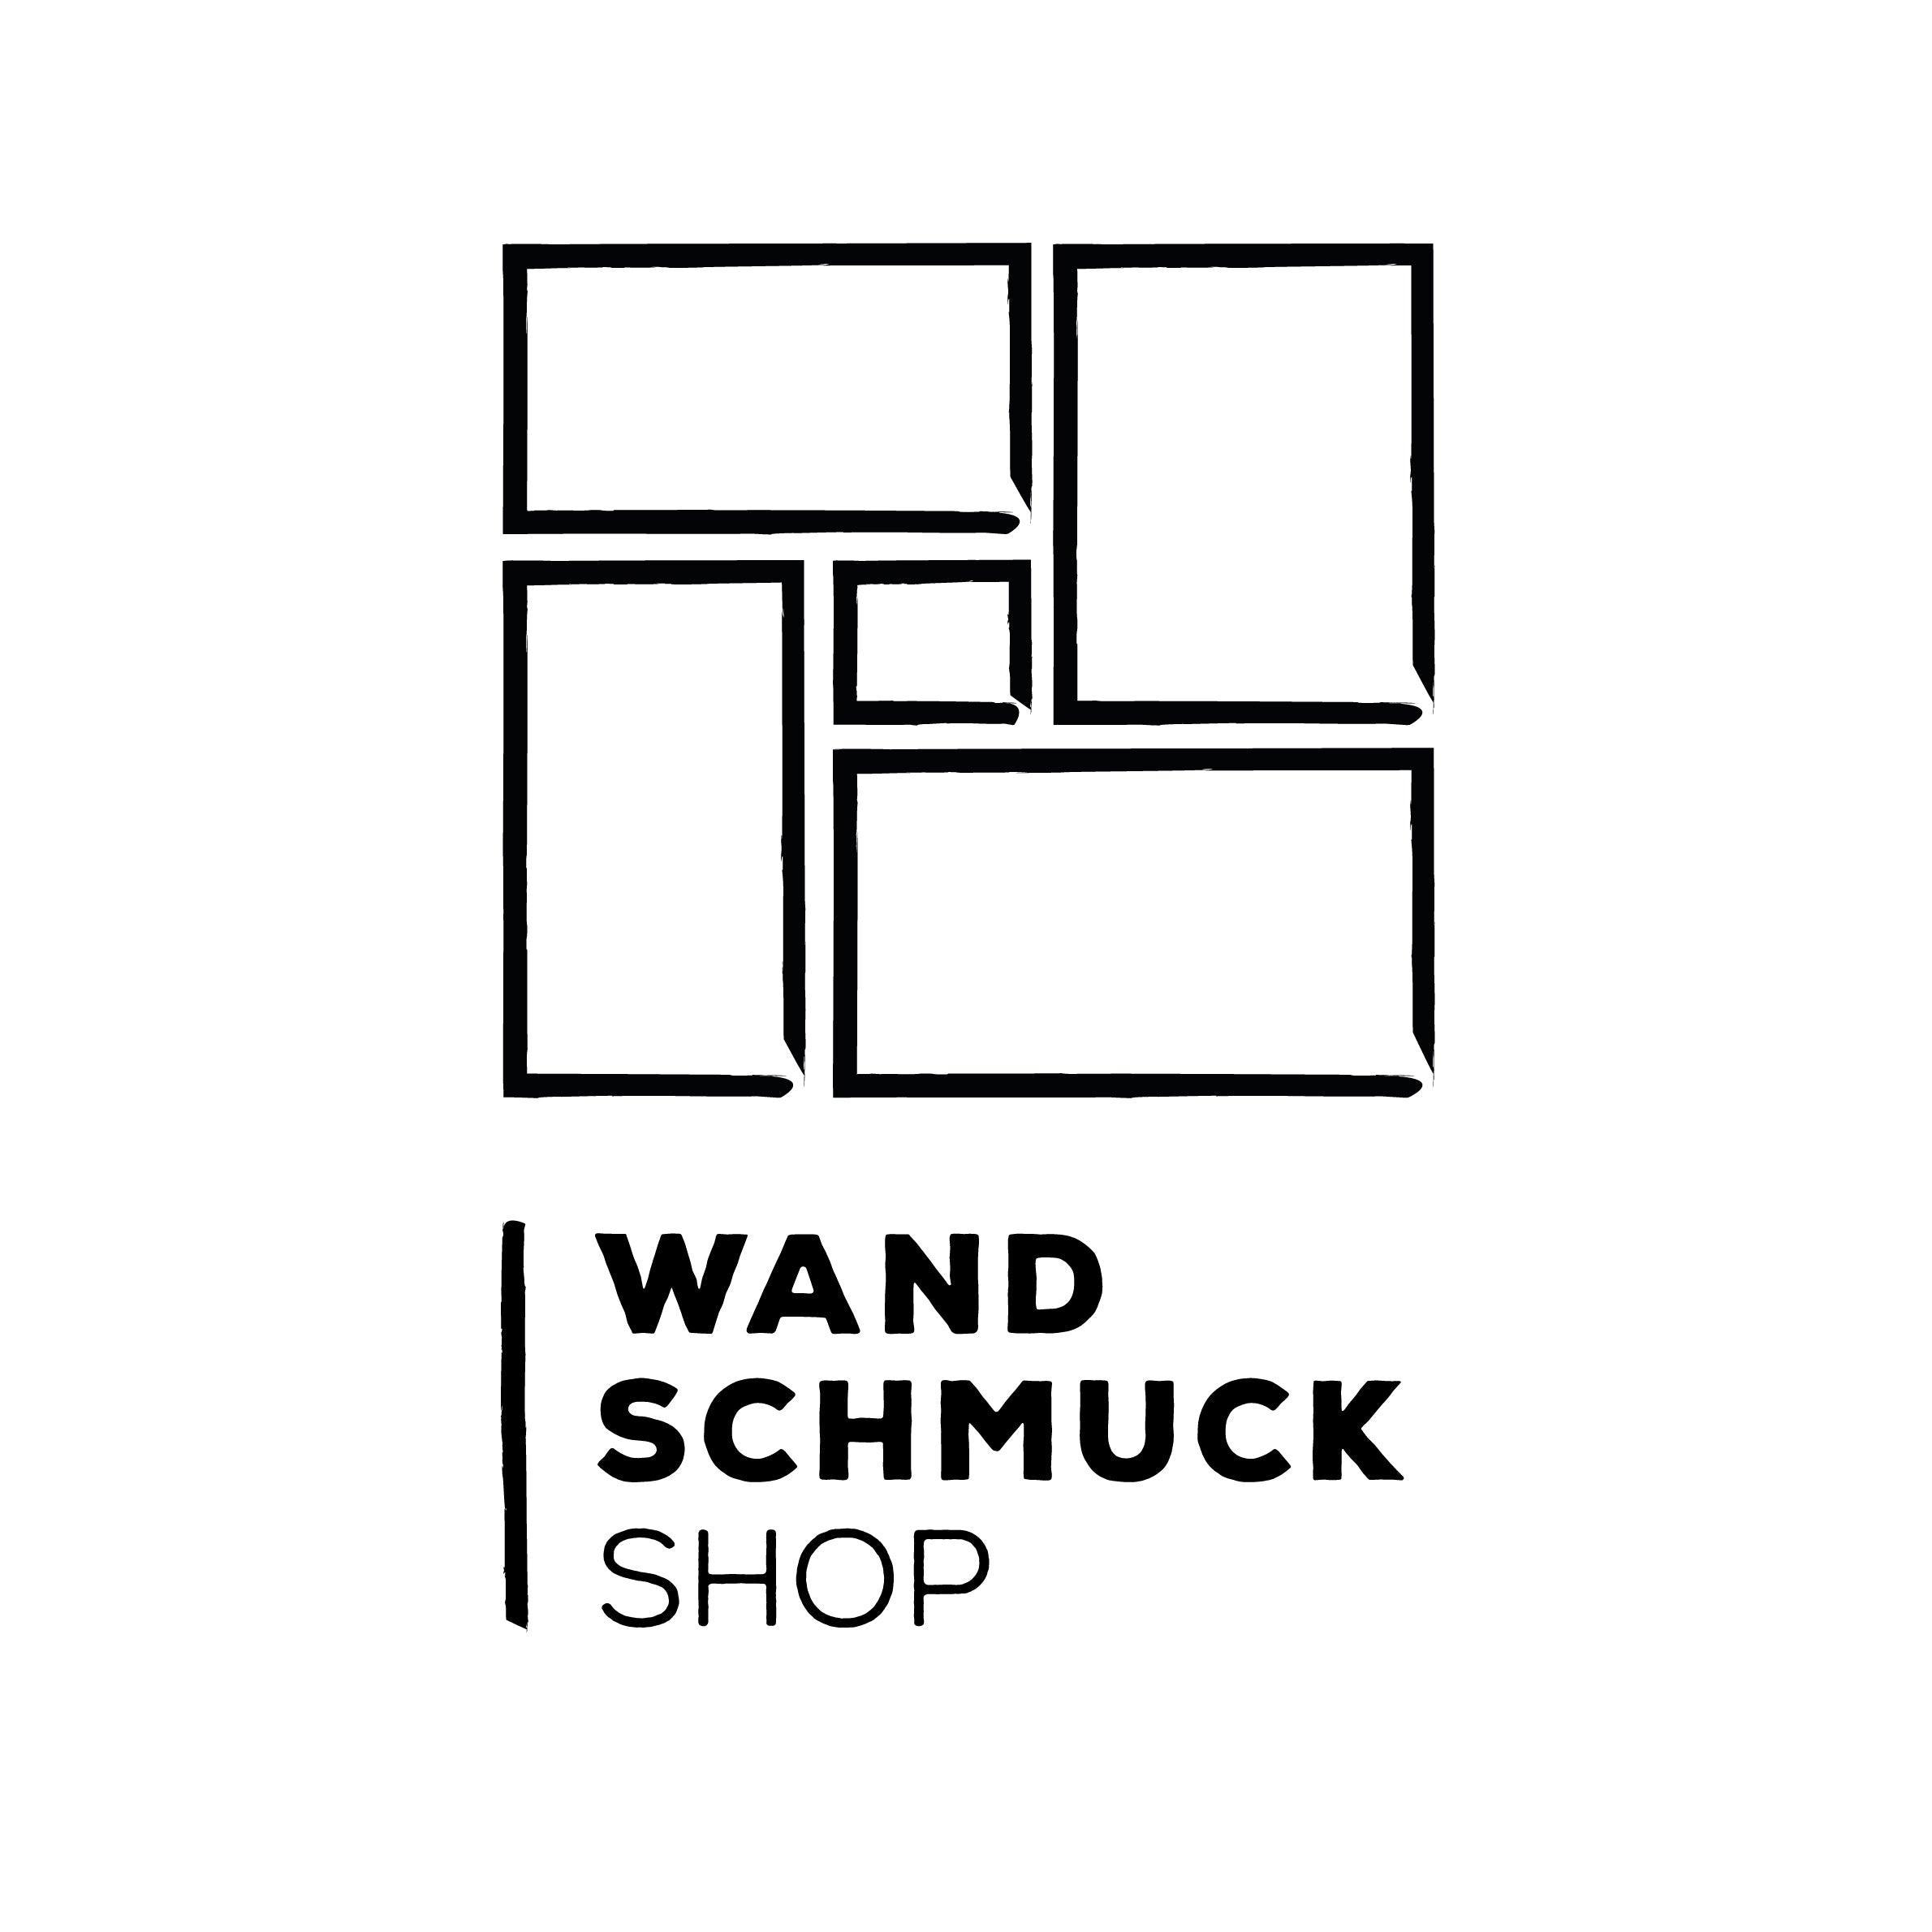 (c) Wandschmuck-shop.de